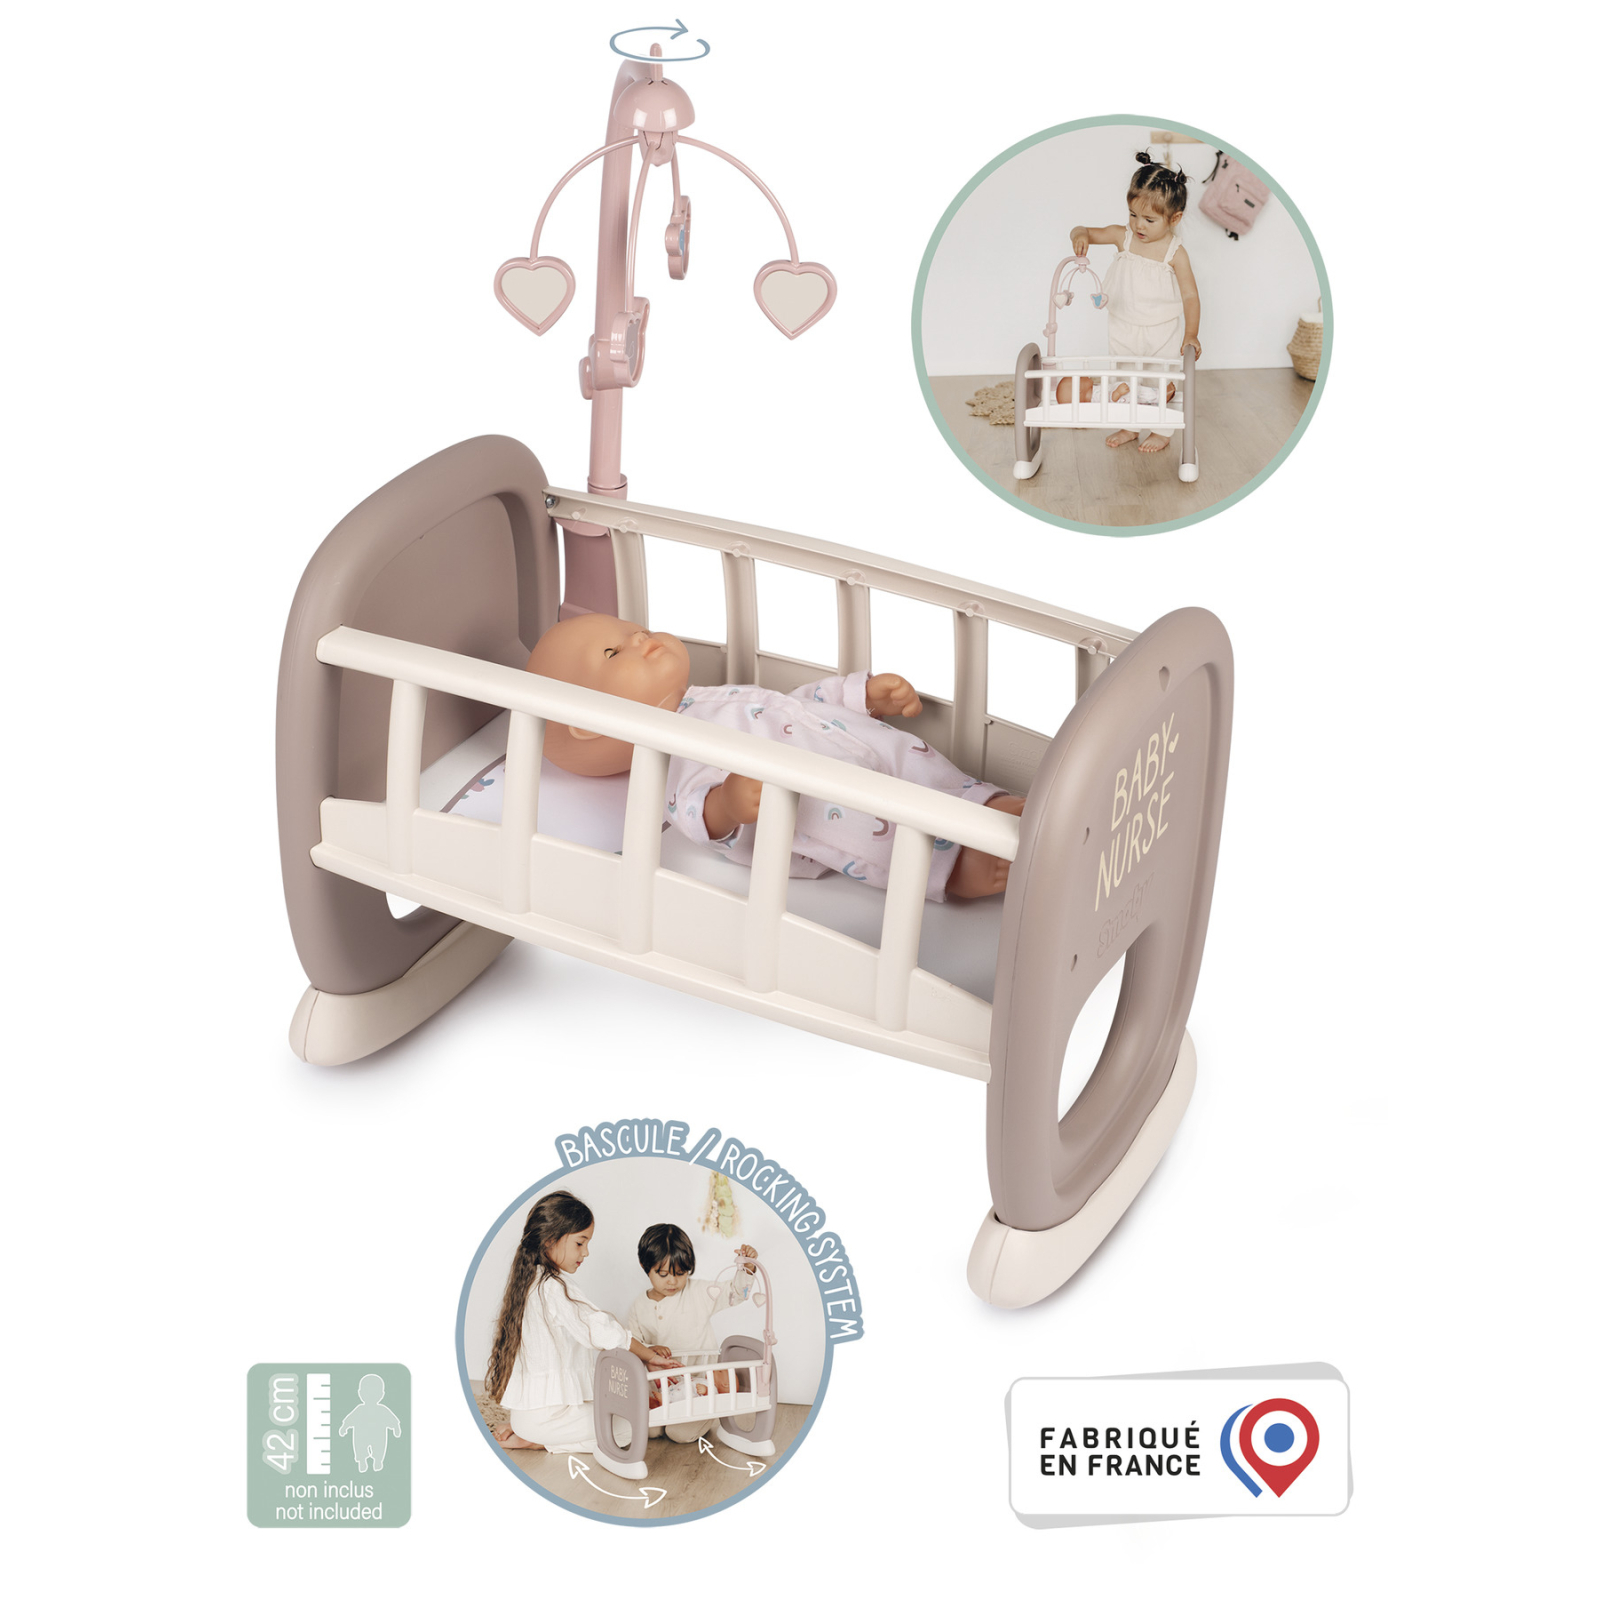 Игровой набор Smoby Toys Колыбель Baby Nurse с мобилем Серо-белая (220372) изображение 3